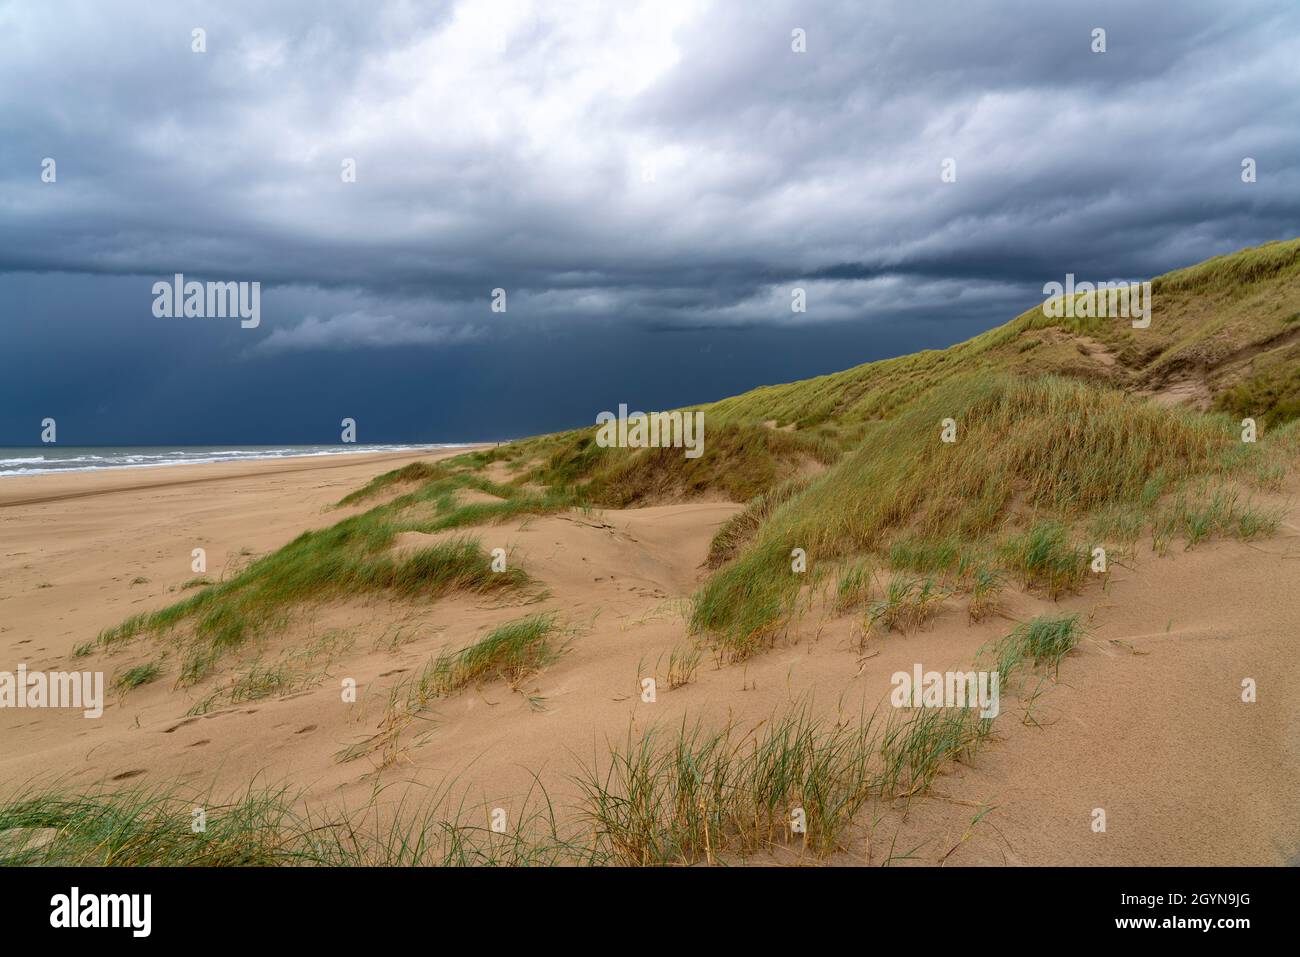 Paesaggio delle dune, spiaggia, nuvole di tempesta scura, autunno sul Mare del Nord in Olanda del Nord, tra le città di Egmond aan Zee e Bergen aan Zee, Paesi Bassi Foto Stock